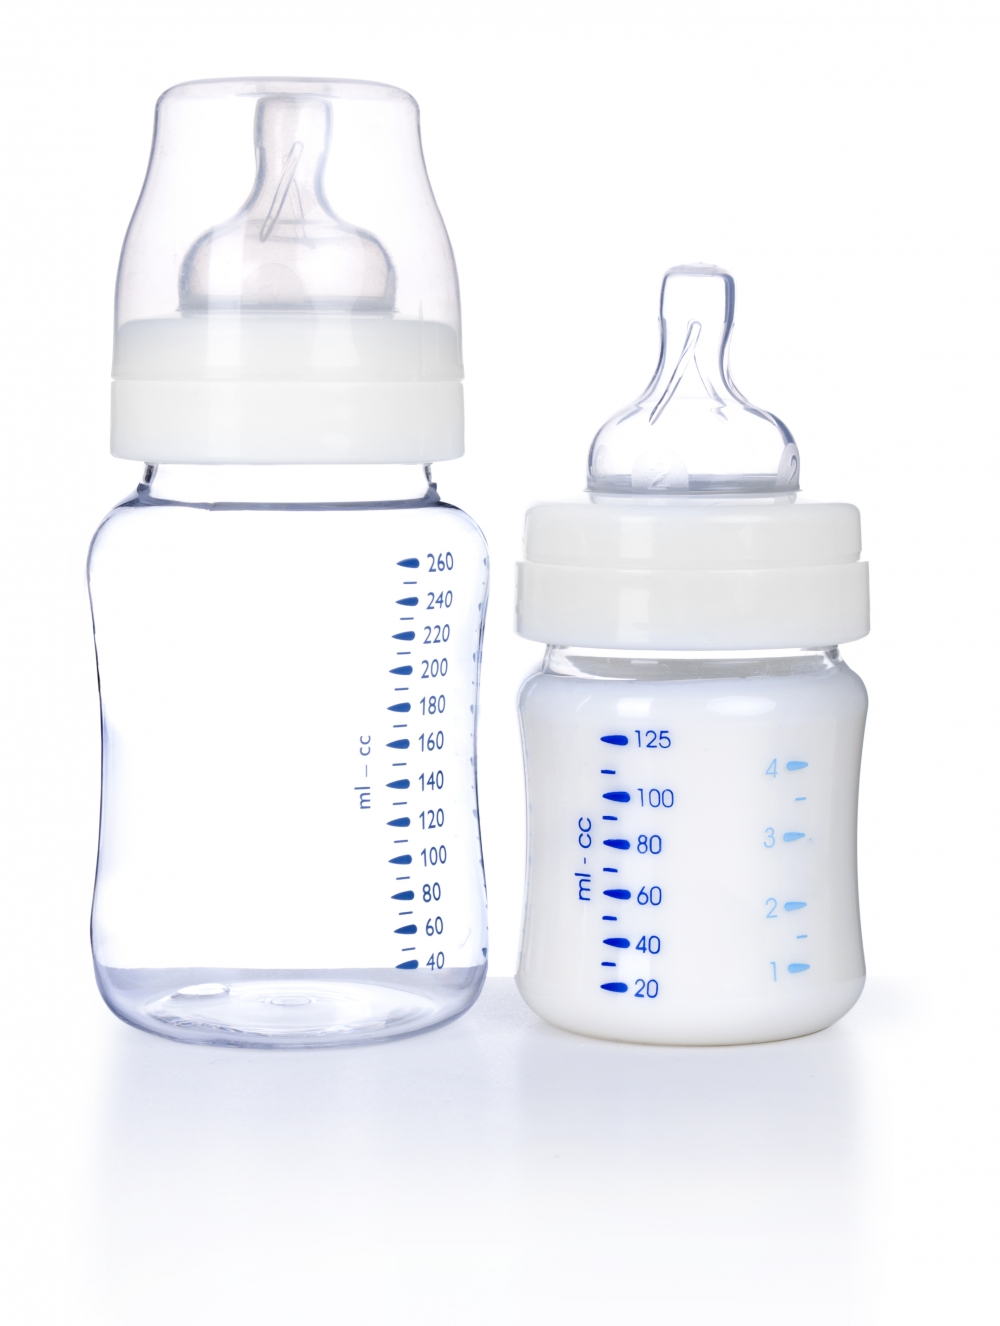 玻璃奶瓶在所有材質中安全性最高，價格也相對便宜